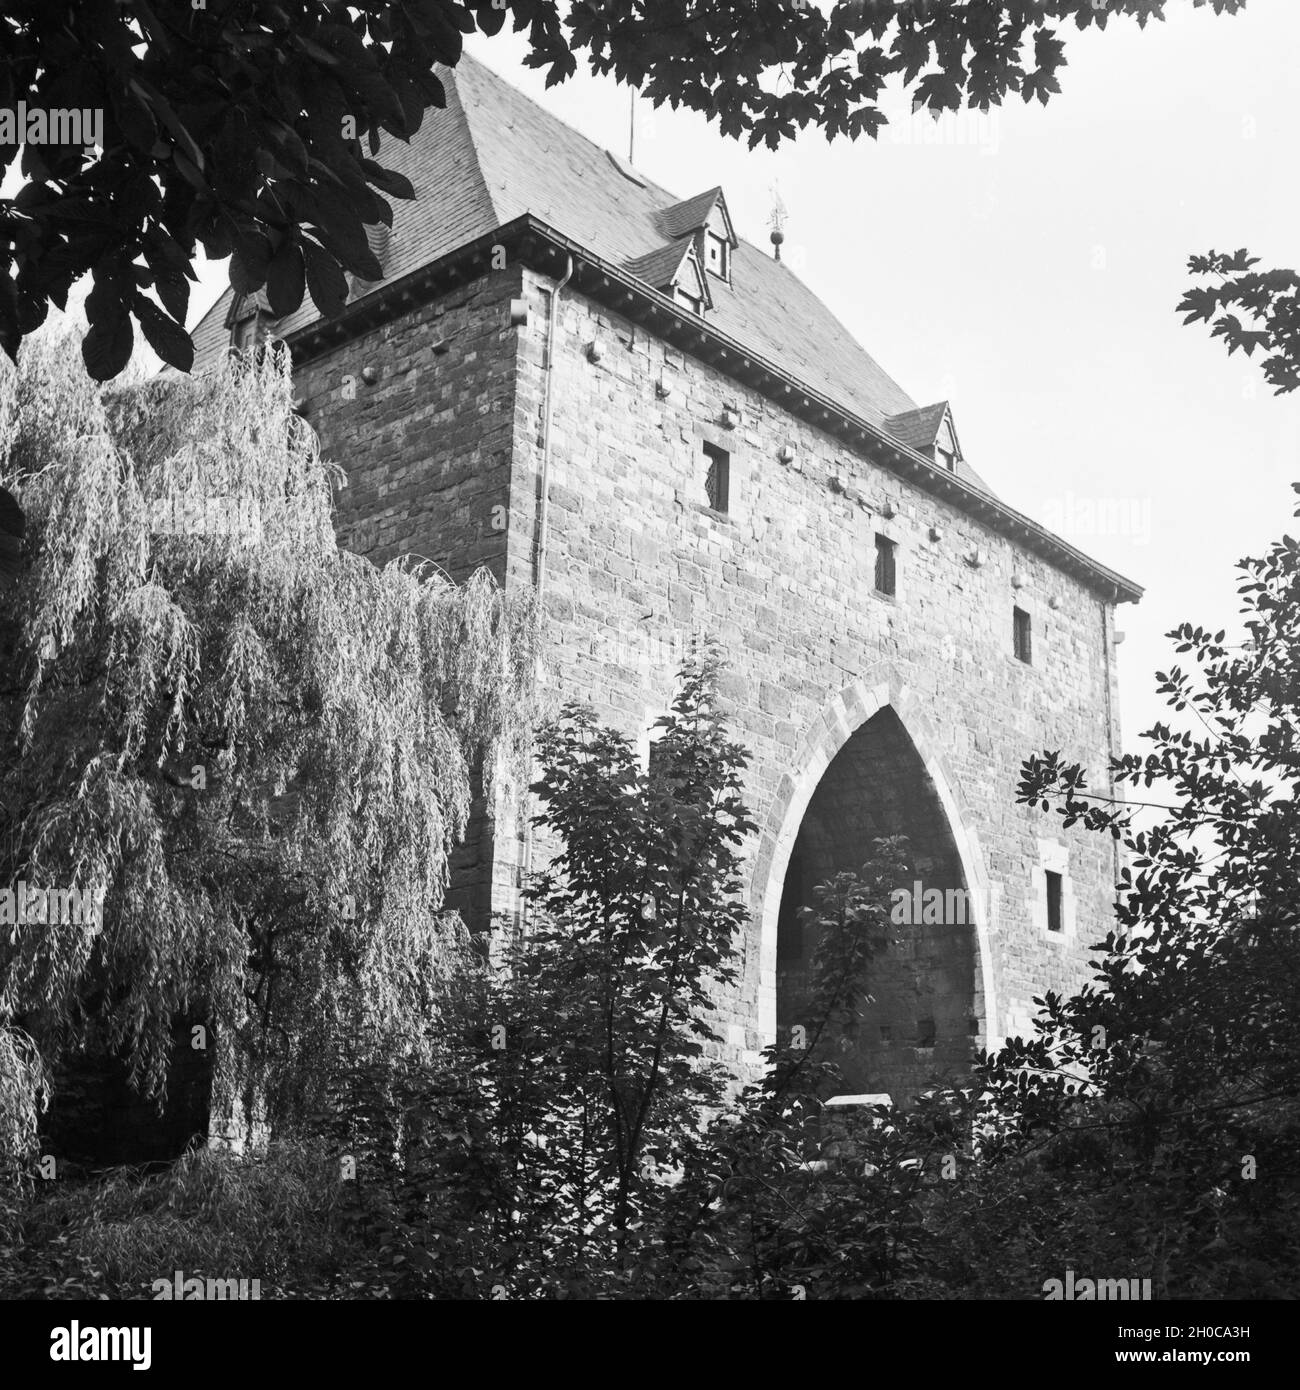 Das ponttor Aachen von Süden, Deutschland 1930er Jahre. Ponttor, eines der Tore der Stadt Aachen, aus dem Süden, Deutschland 1930. Stockfoto